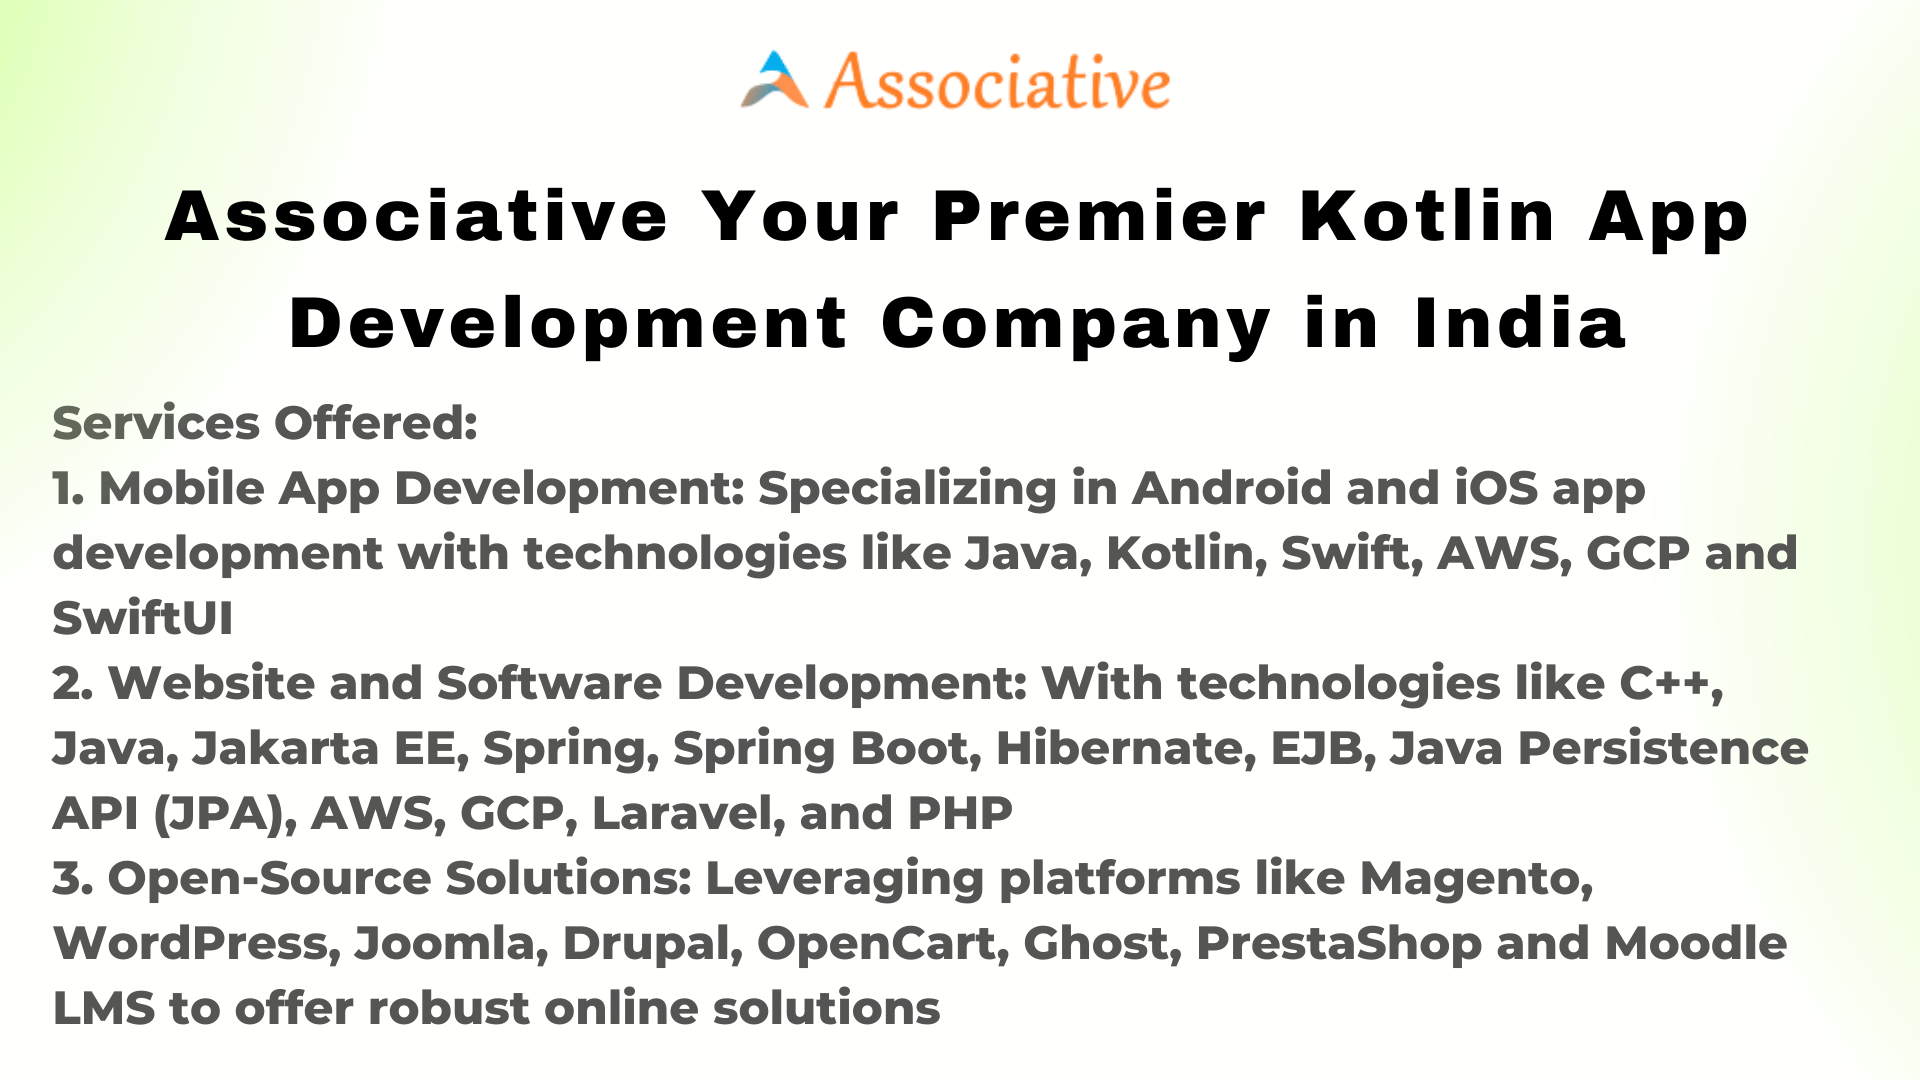 Associative Your Premier Kotlin App Development Company in India